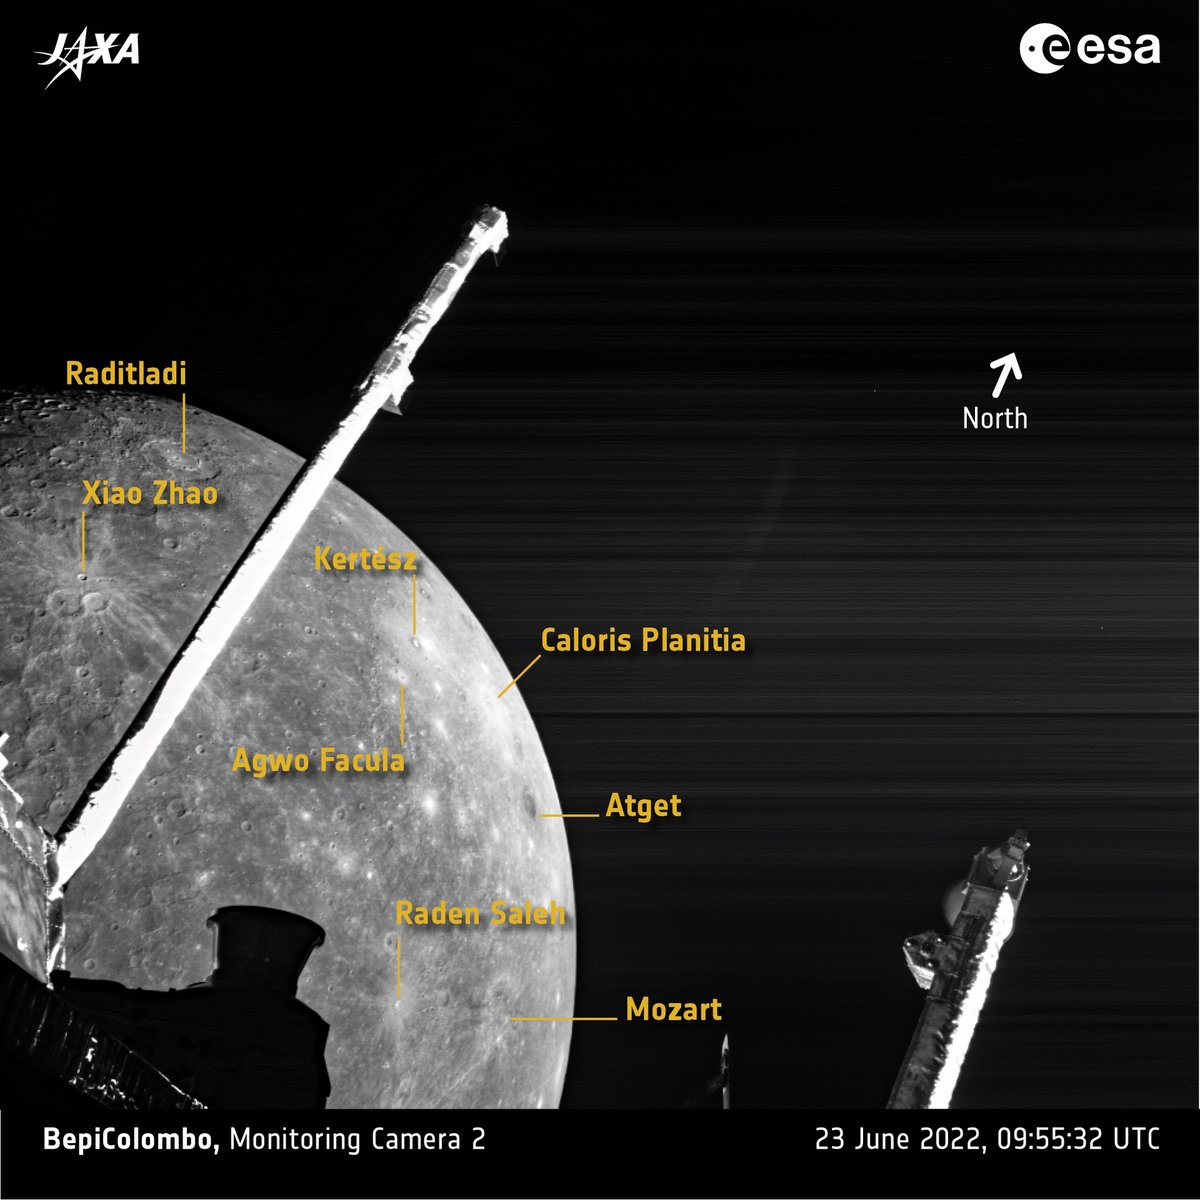 Quelques-uns des cratères caractéristiques de Mercure détaillés. © ESA/JAXA/Bepicolombo